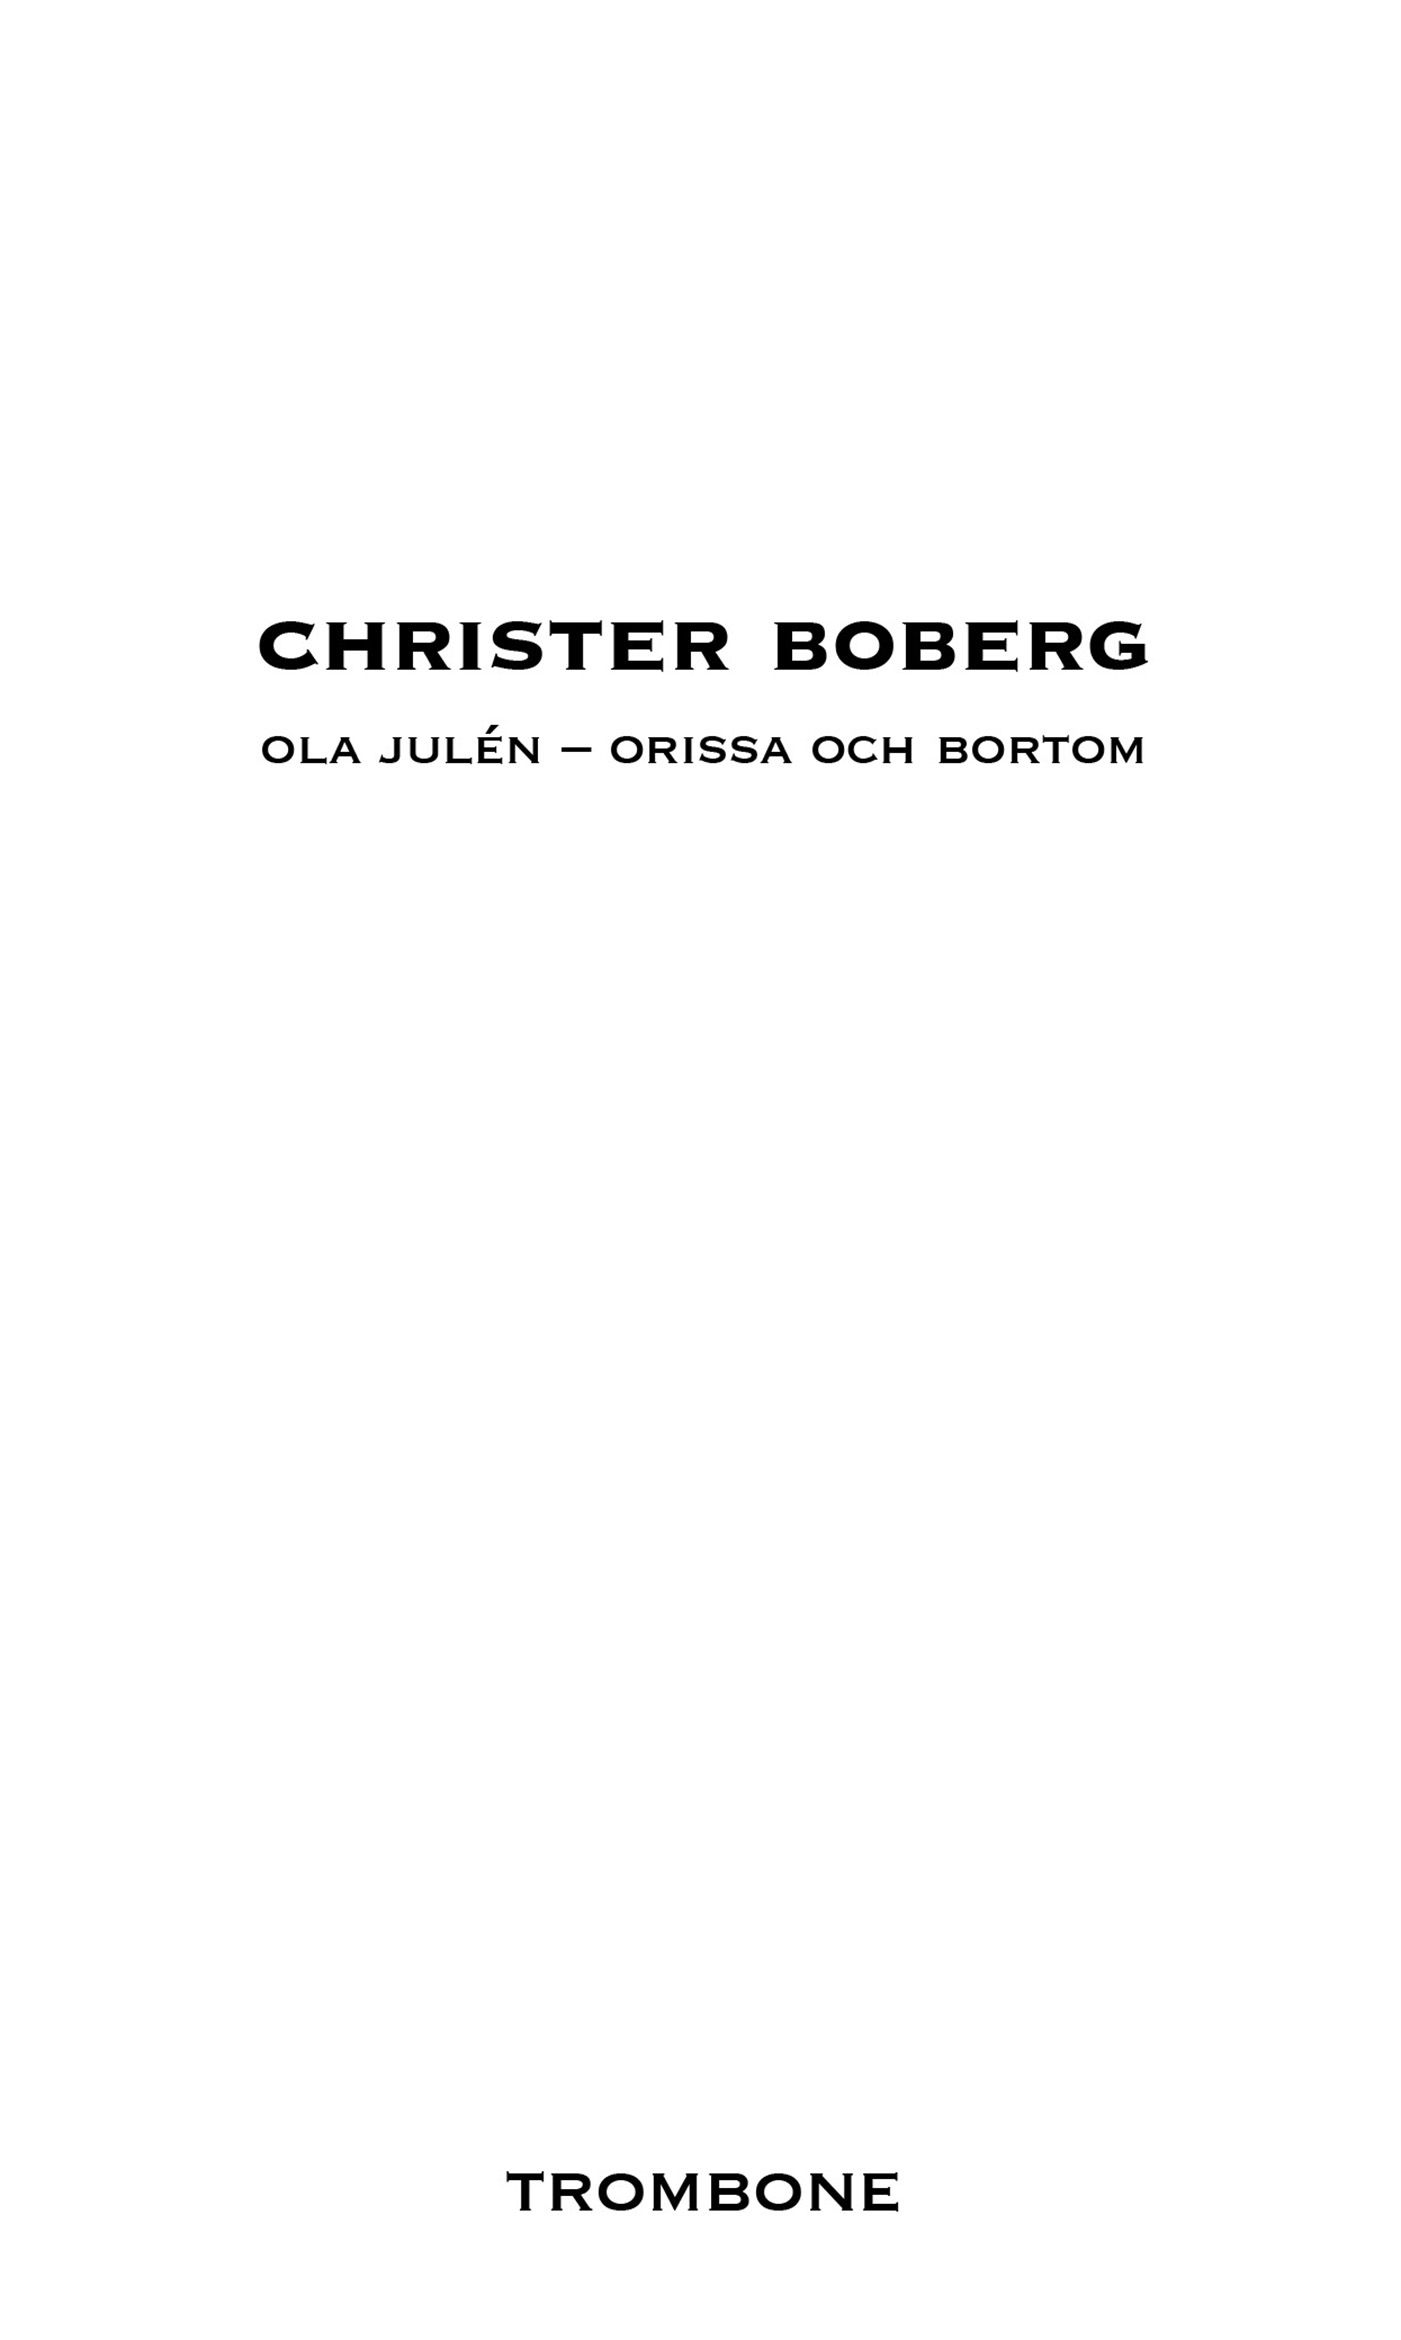 Ola Julén - Orissa och bortom, eBook by Christer Boberg